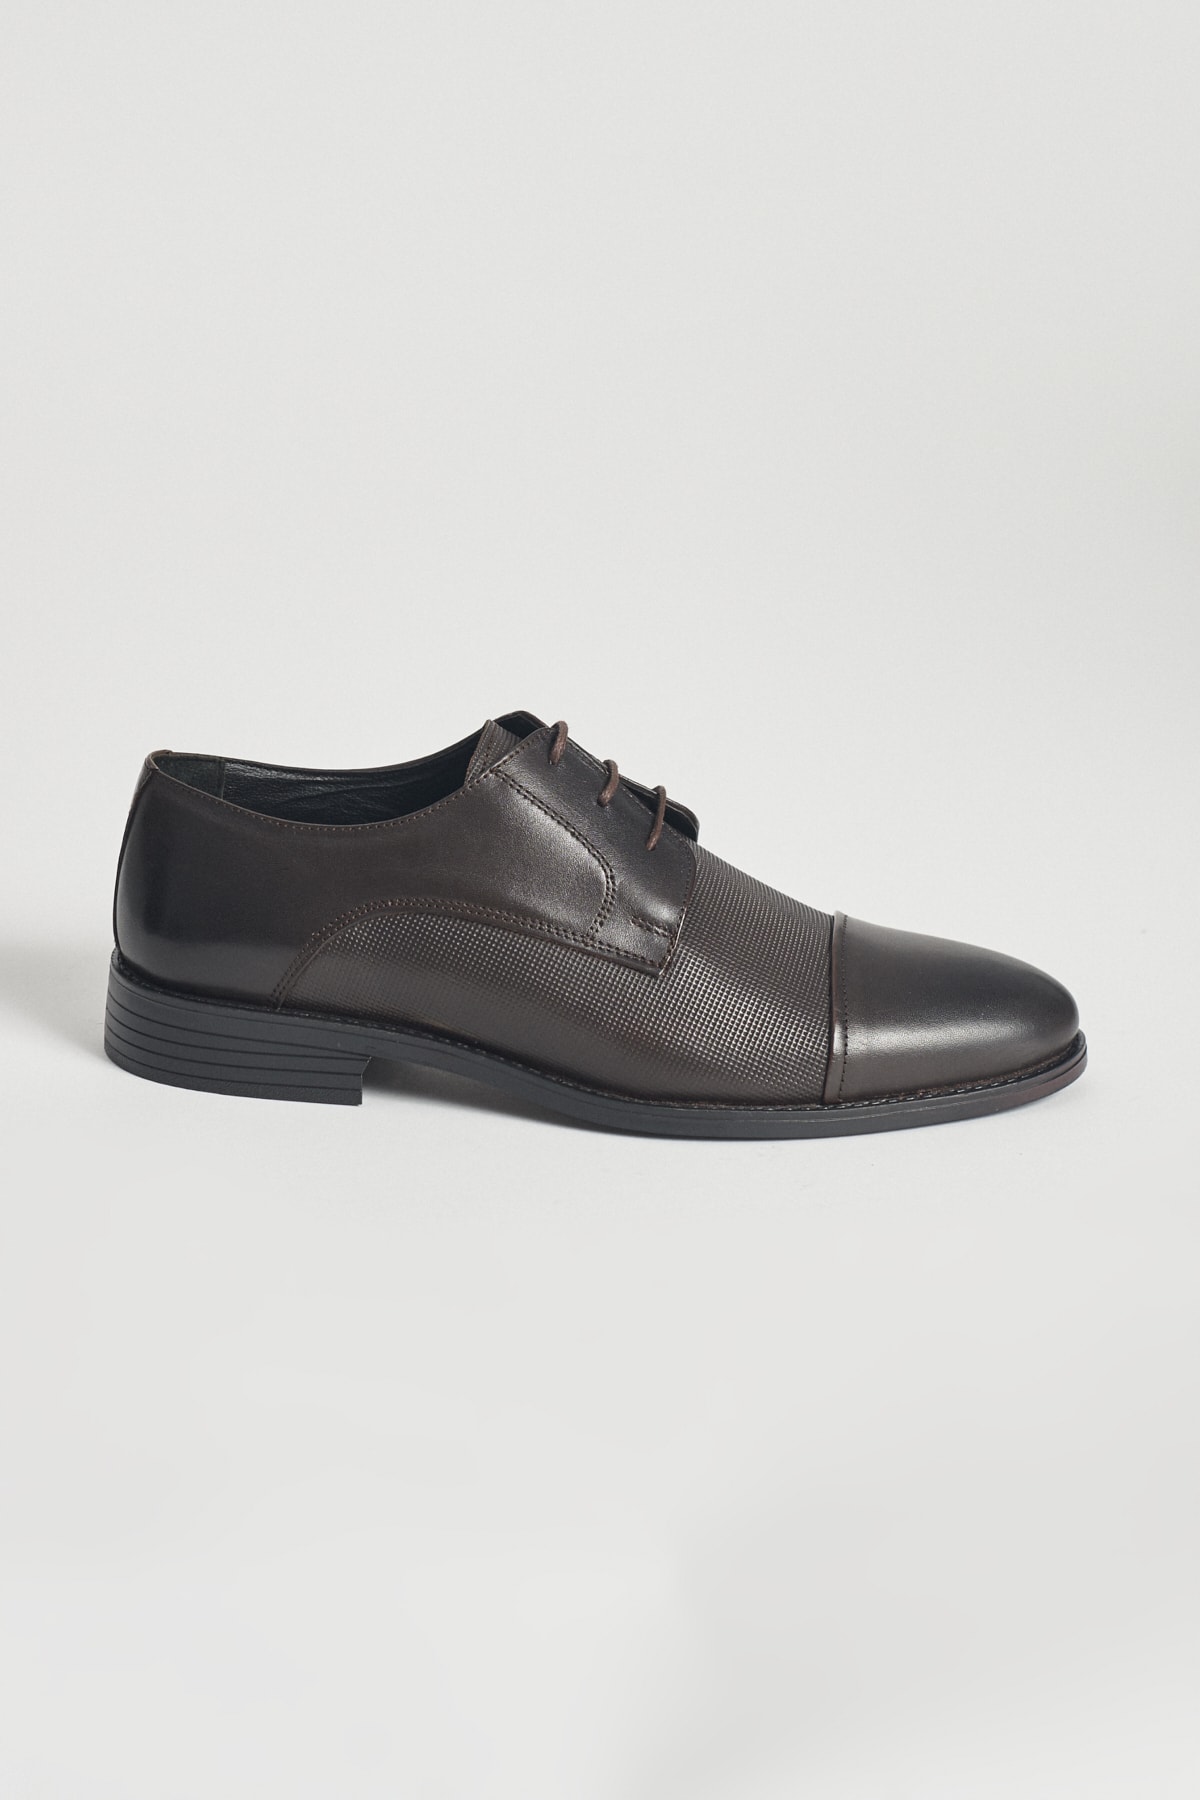 ALTINYILDIZ CLASSICS Erkek Kahverengi Klasik Deri Ayakkabı